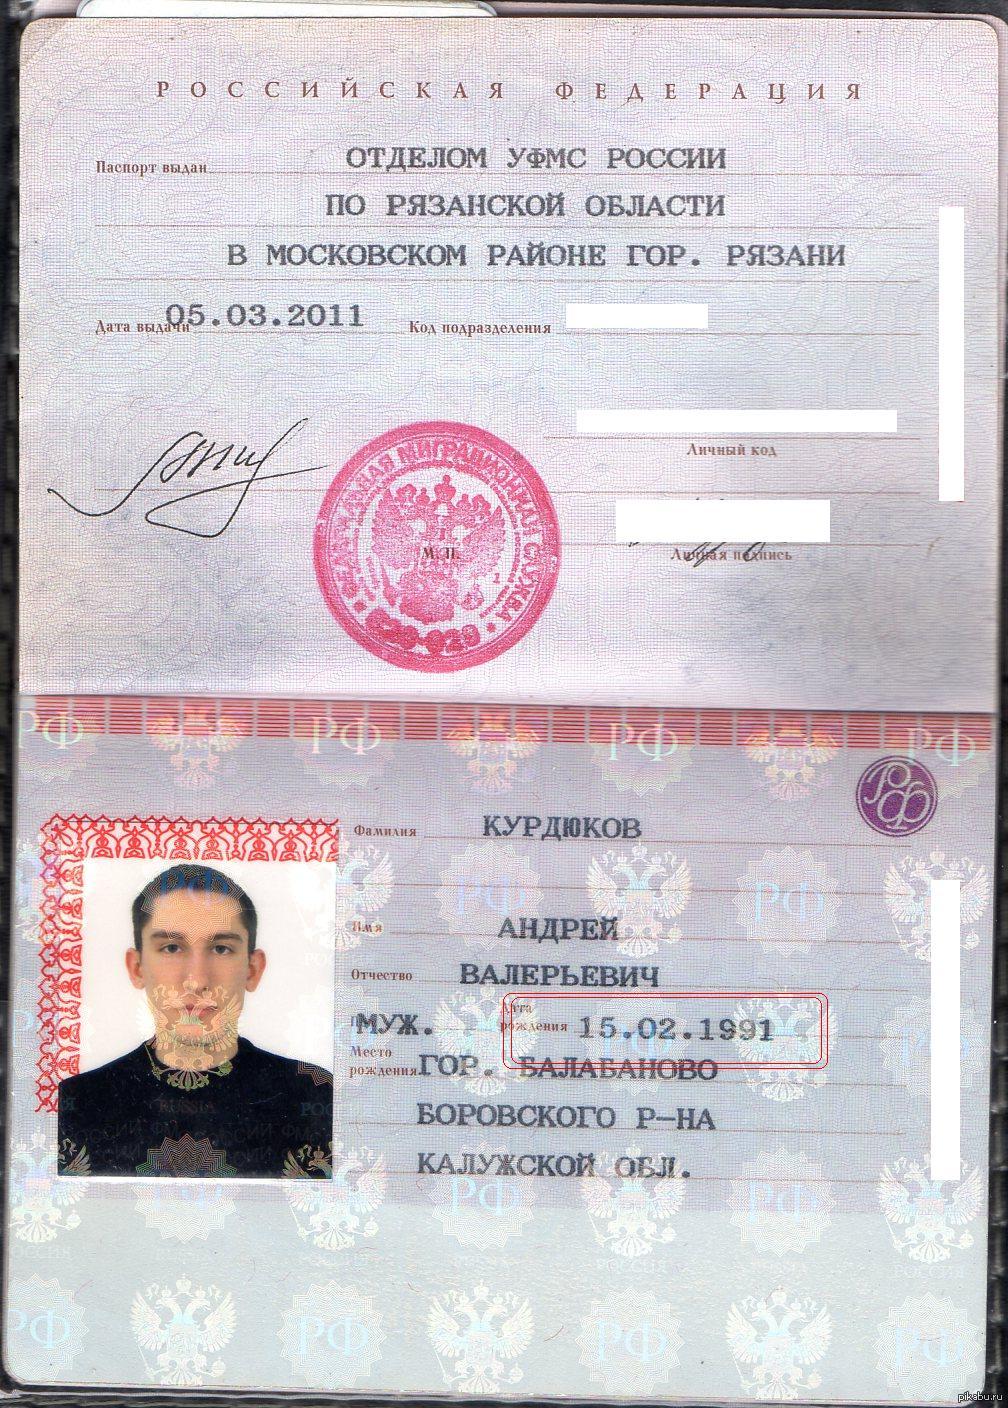 Код подразделения города москвы